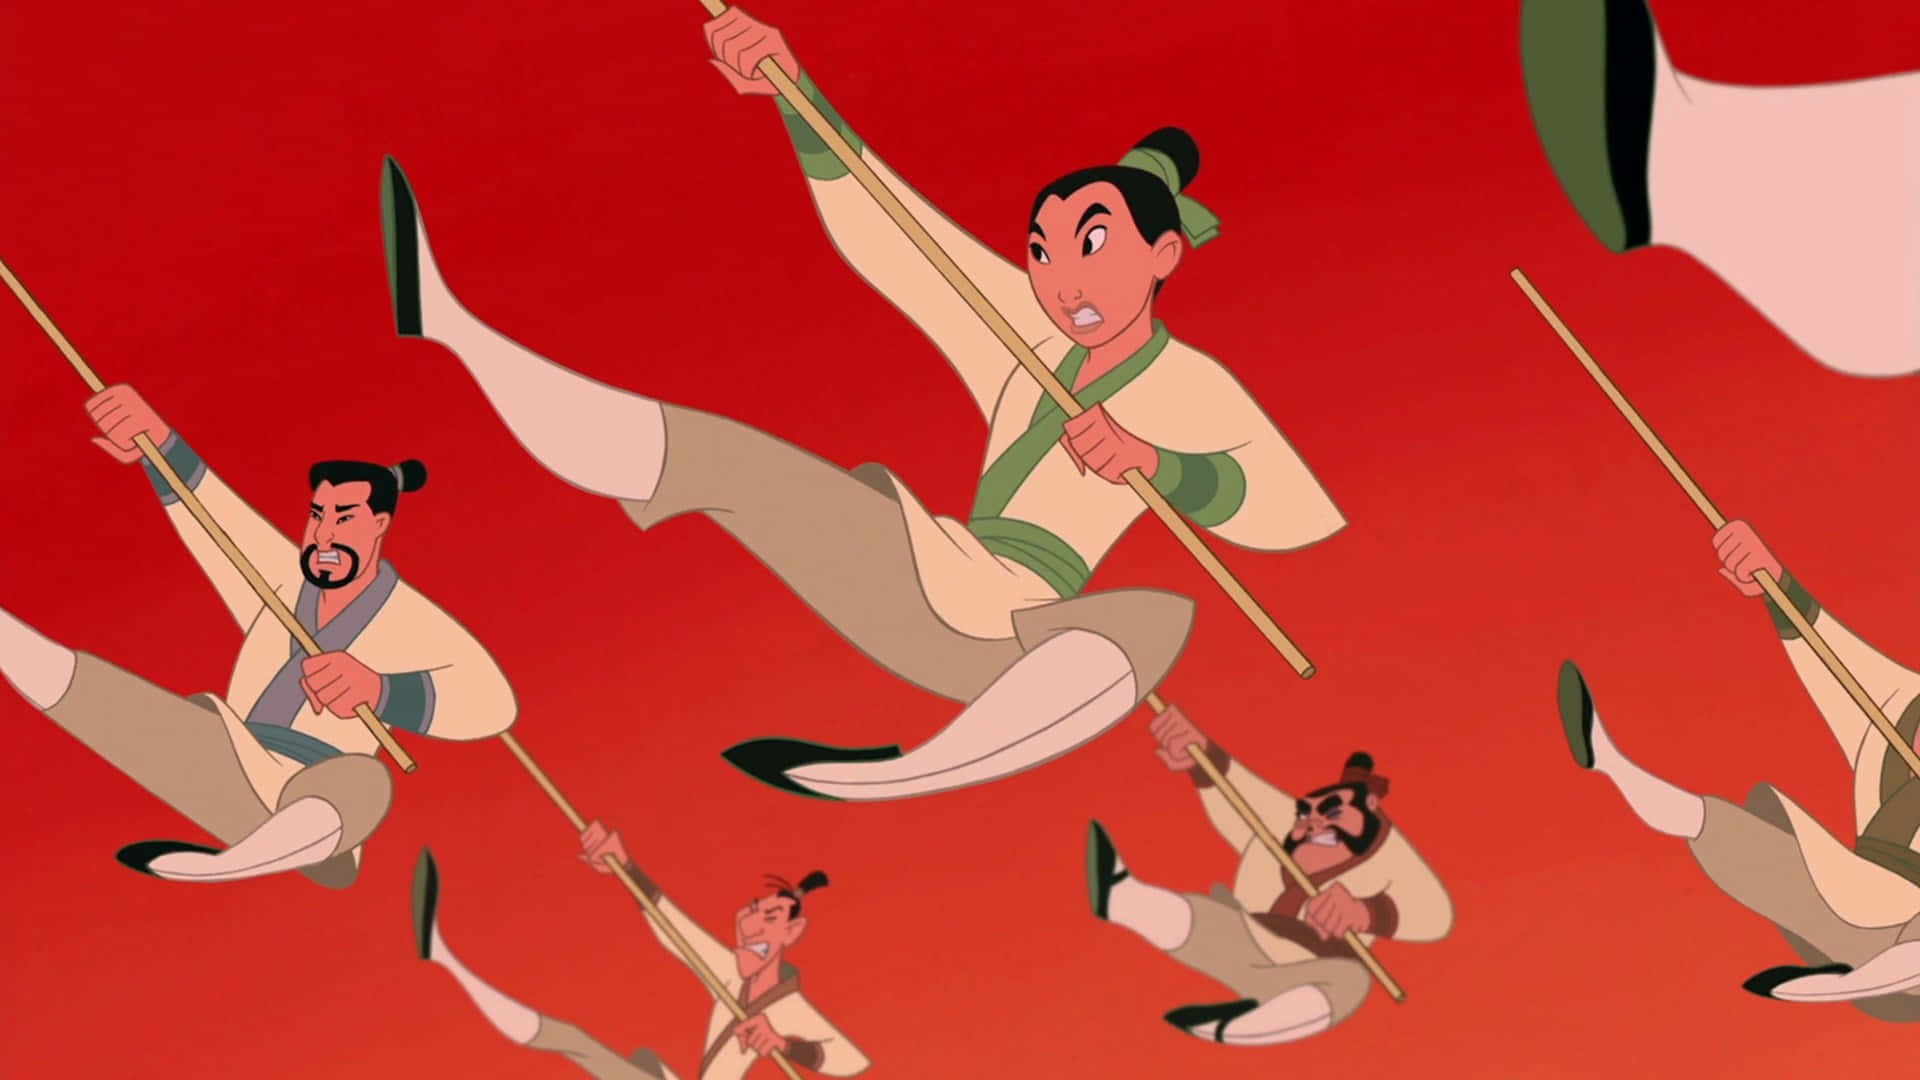 Lacoraggiosa Mulan Guida I Suoi Alleati Nella Lotta Contro L'ingiustizia.